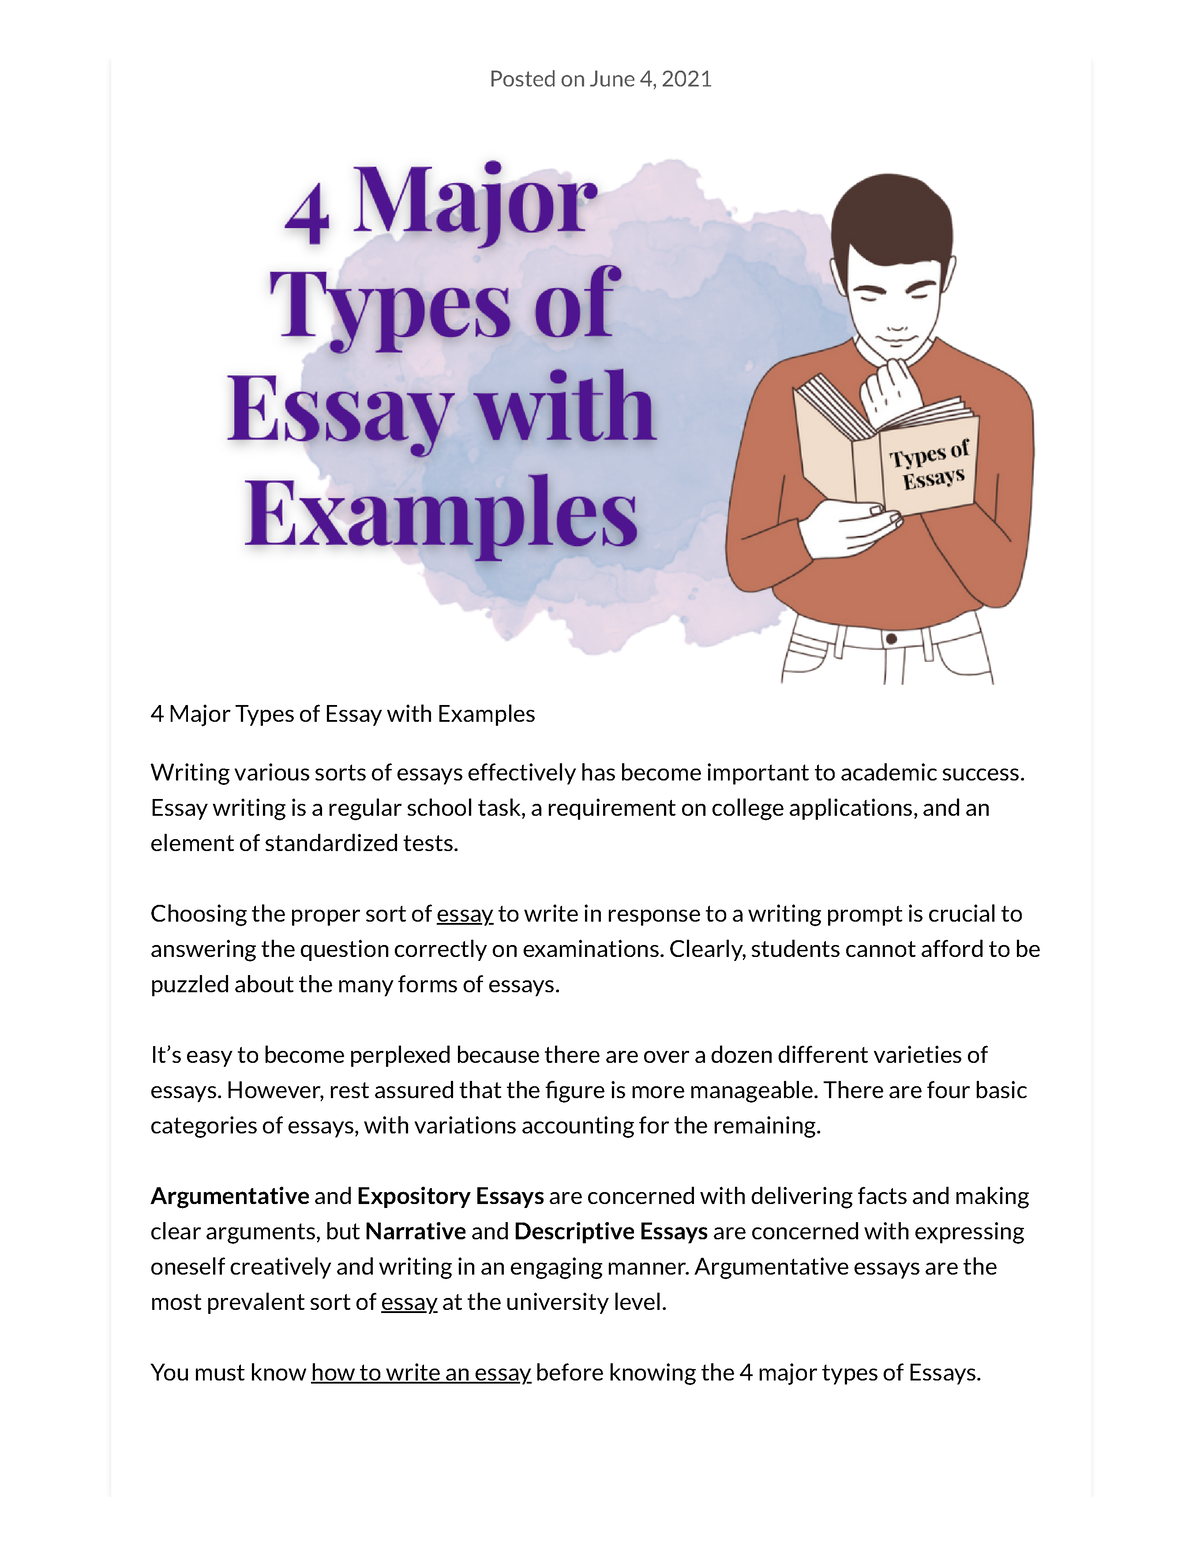 4 major types of essay